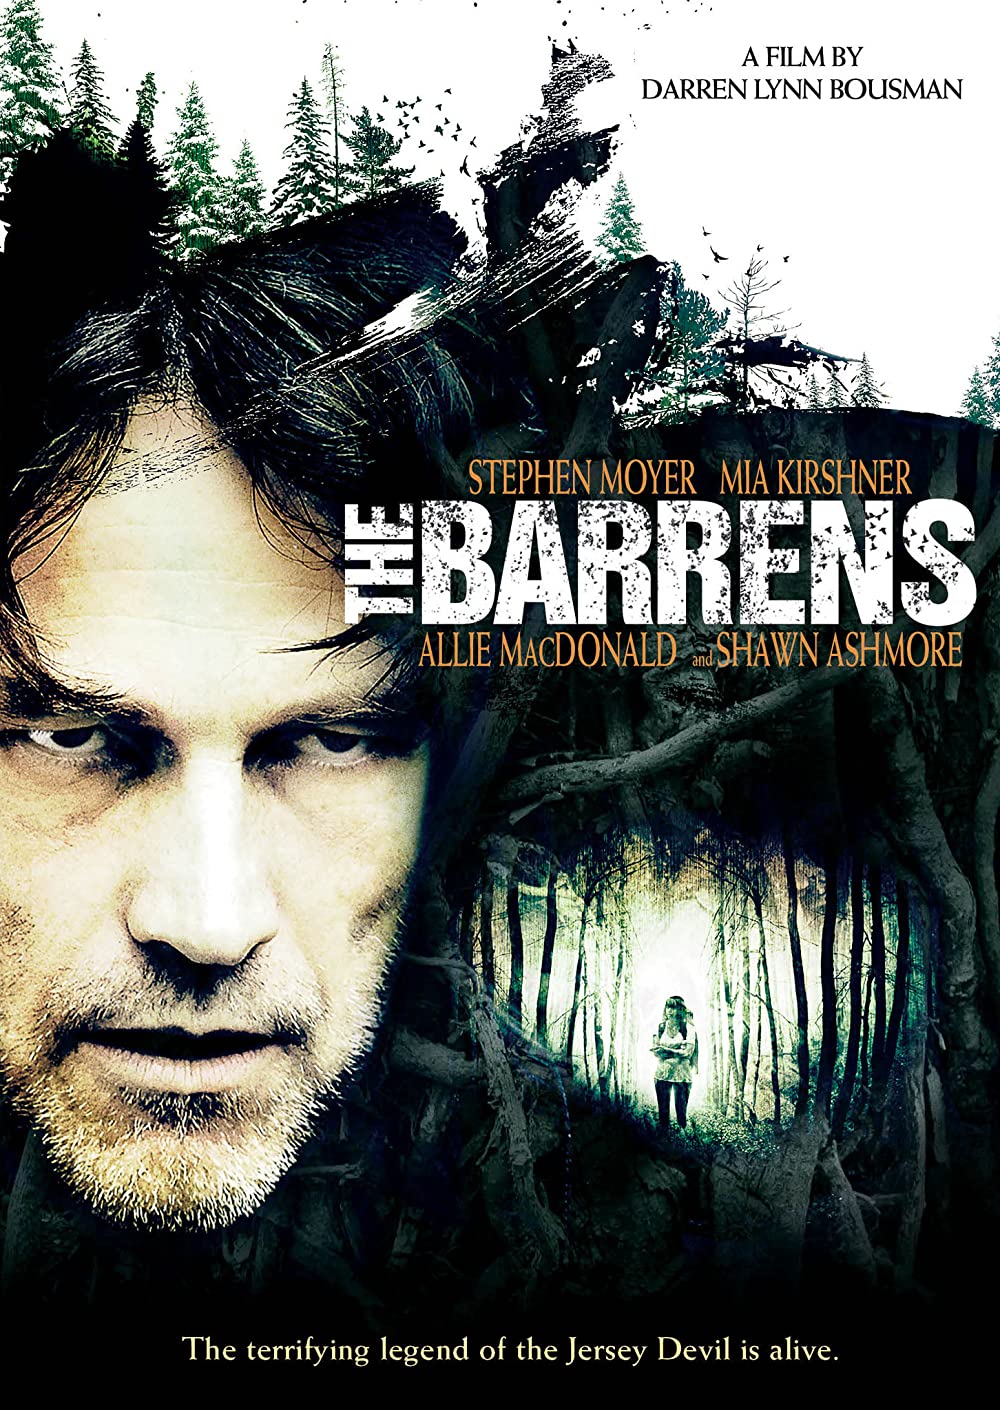 The Barrens ป่าผีดุ (2012)